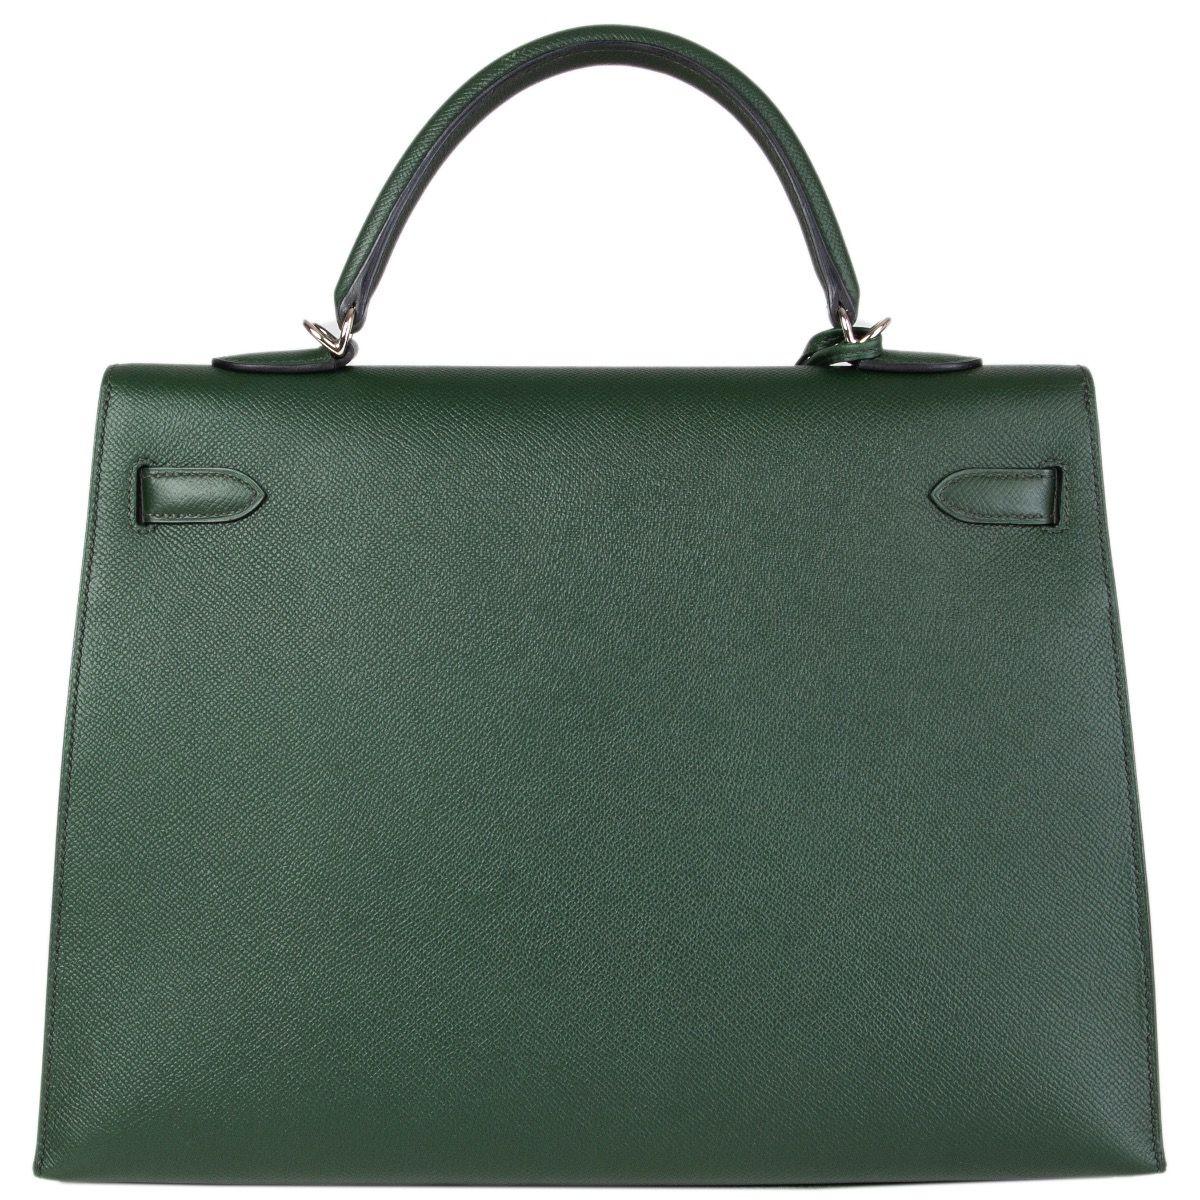 Black HERMES Vert Anglais green Epsom leather & Palladium KELLY 35 Sellier Bag